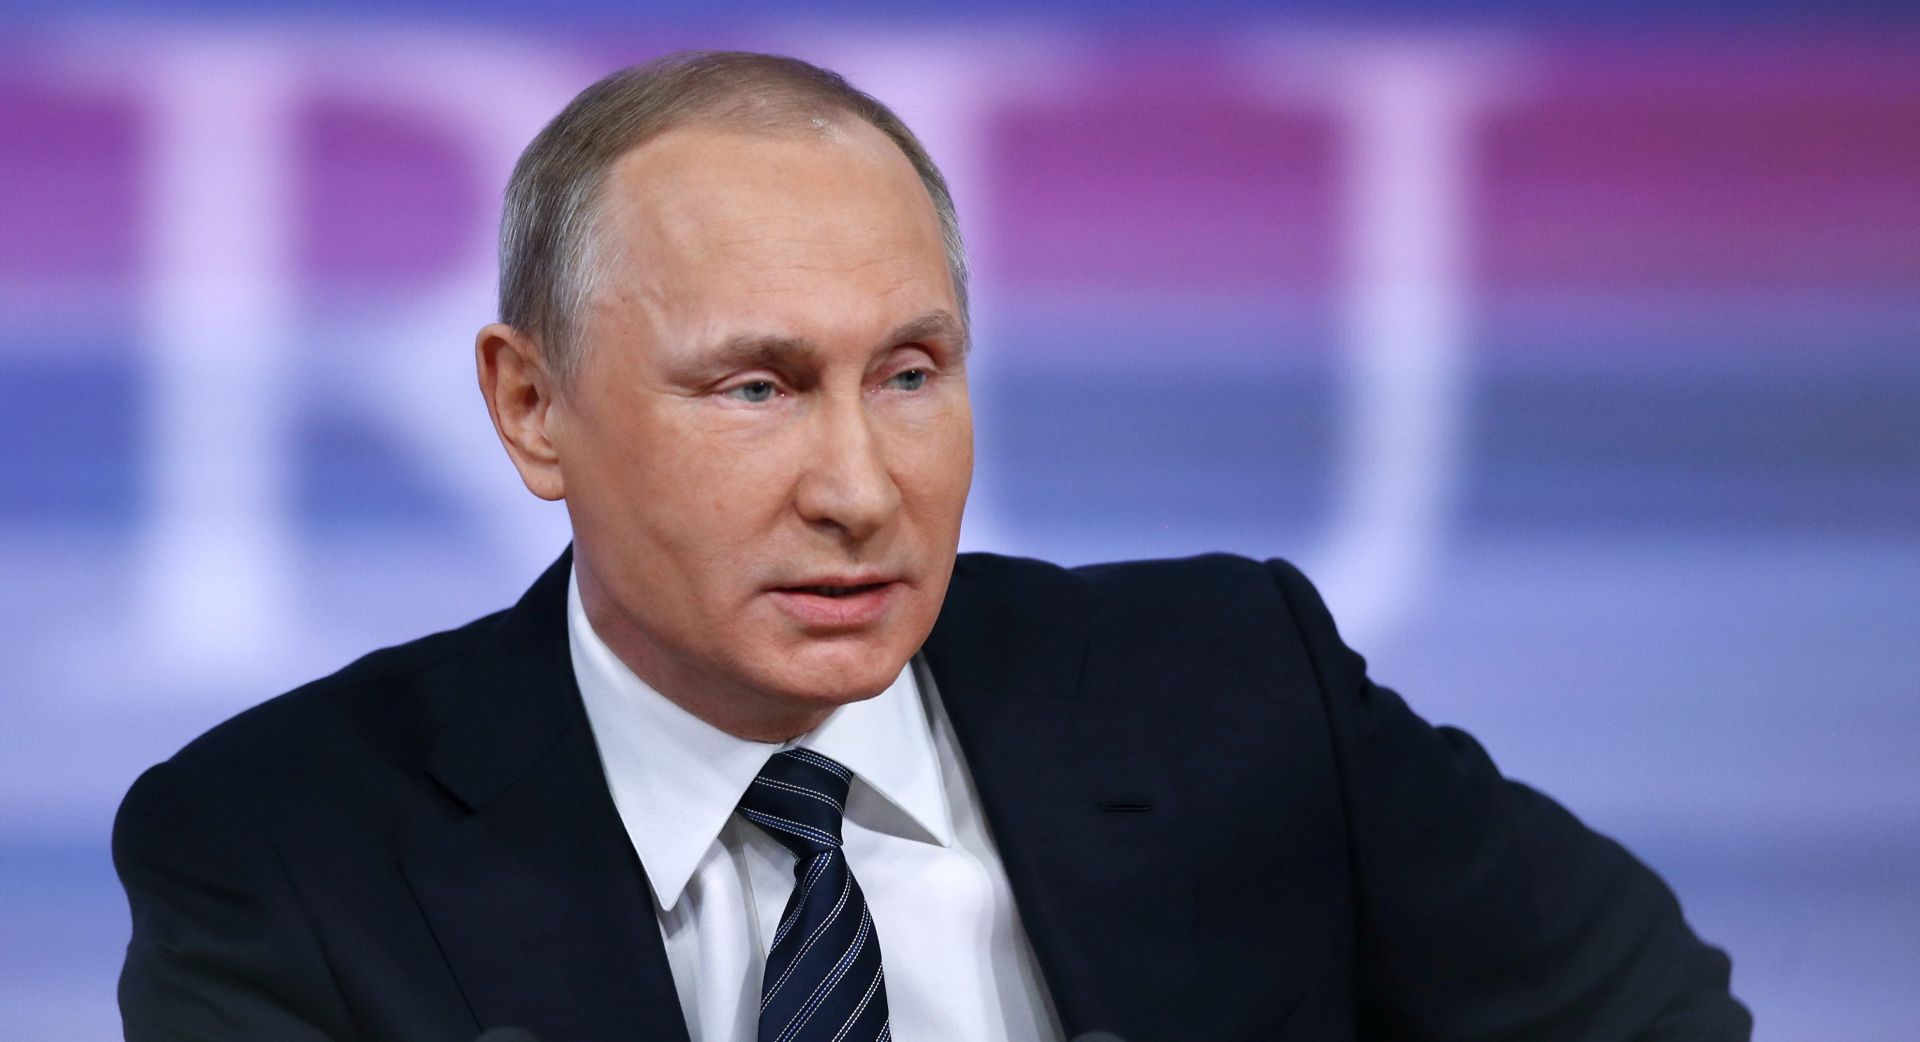 UZAJAMNE SIMPATIJE Putin: “Trump je bistar i talentiran, apsolutni favorit za predsjednika”